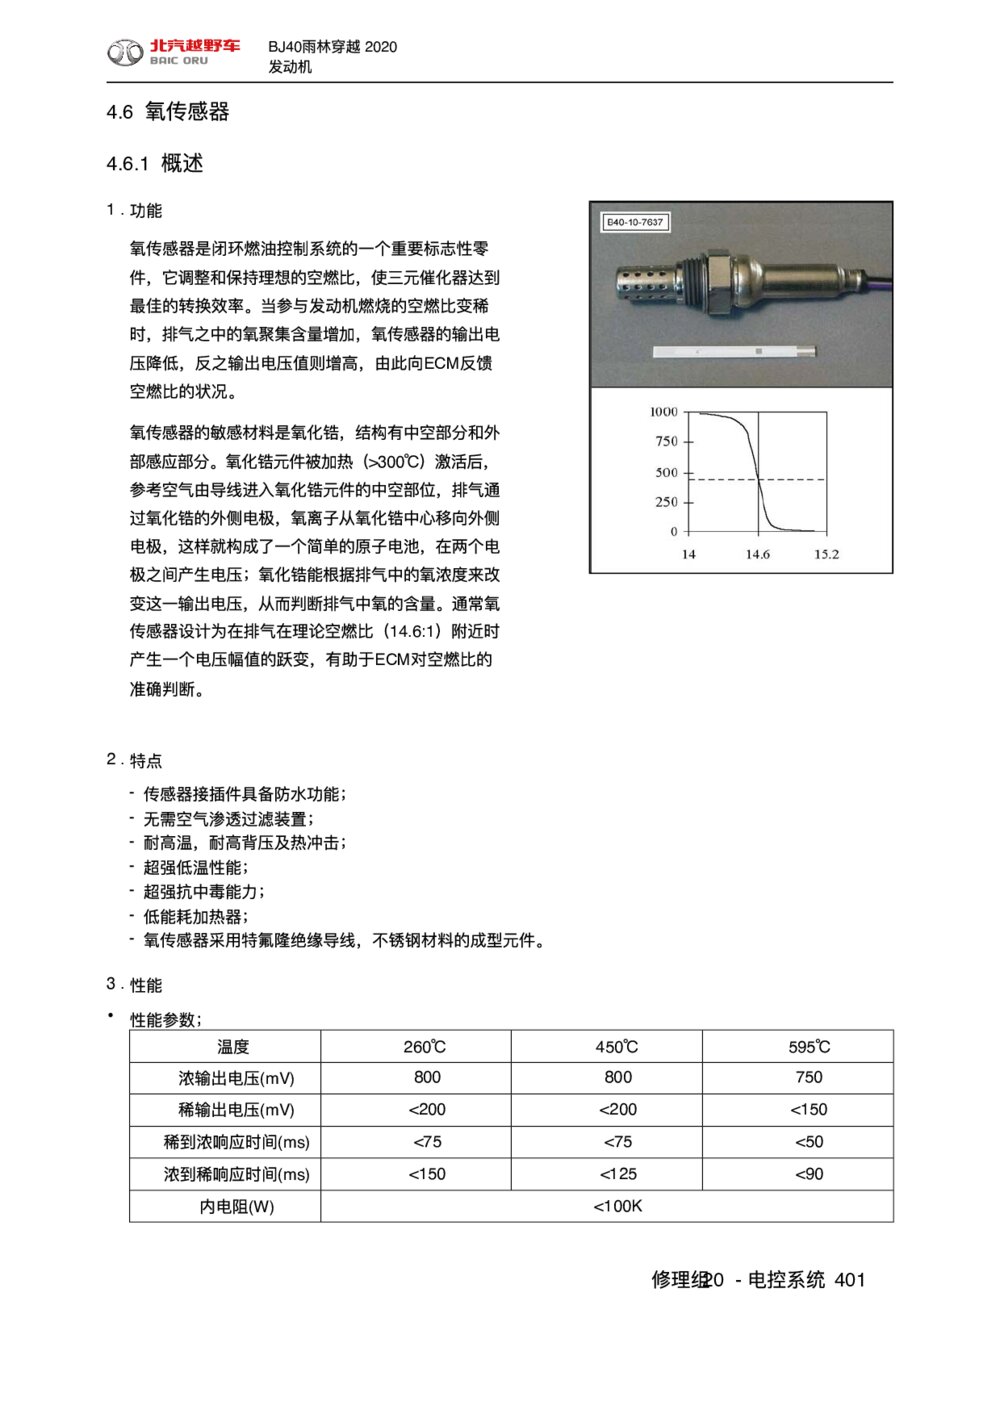 2020款北京BJ40雨林穿越版氧传感器手册